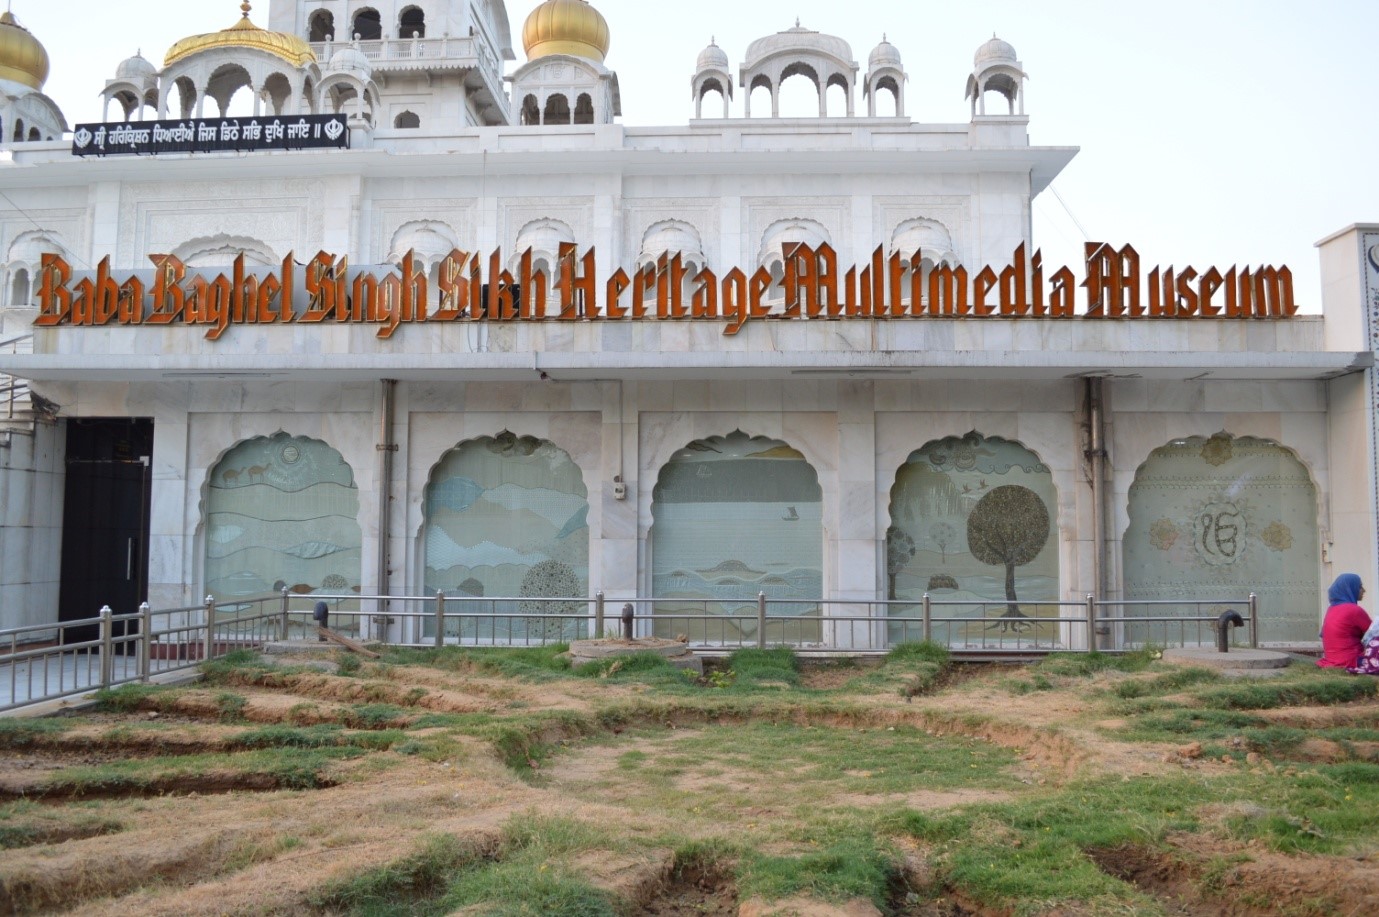 Baba Baghel Singh Sikh Heritage Multimedia Museum 